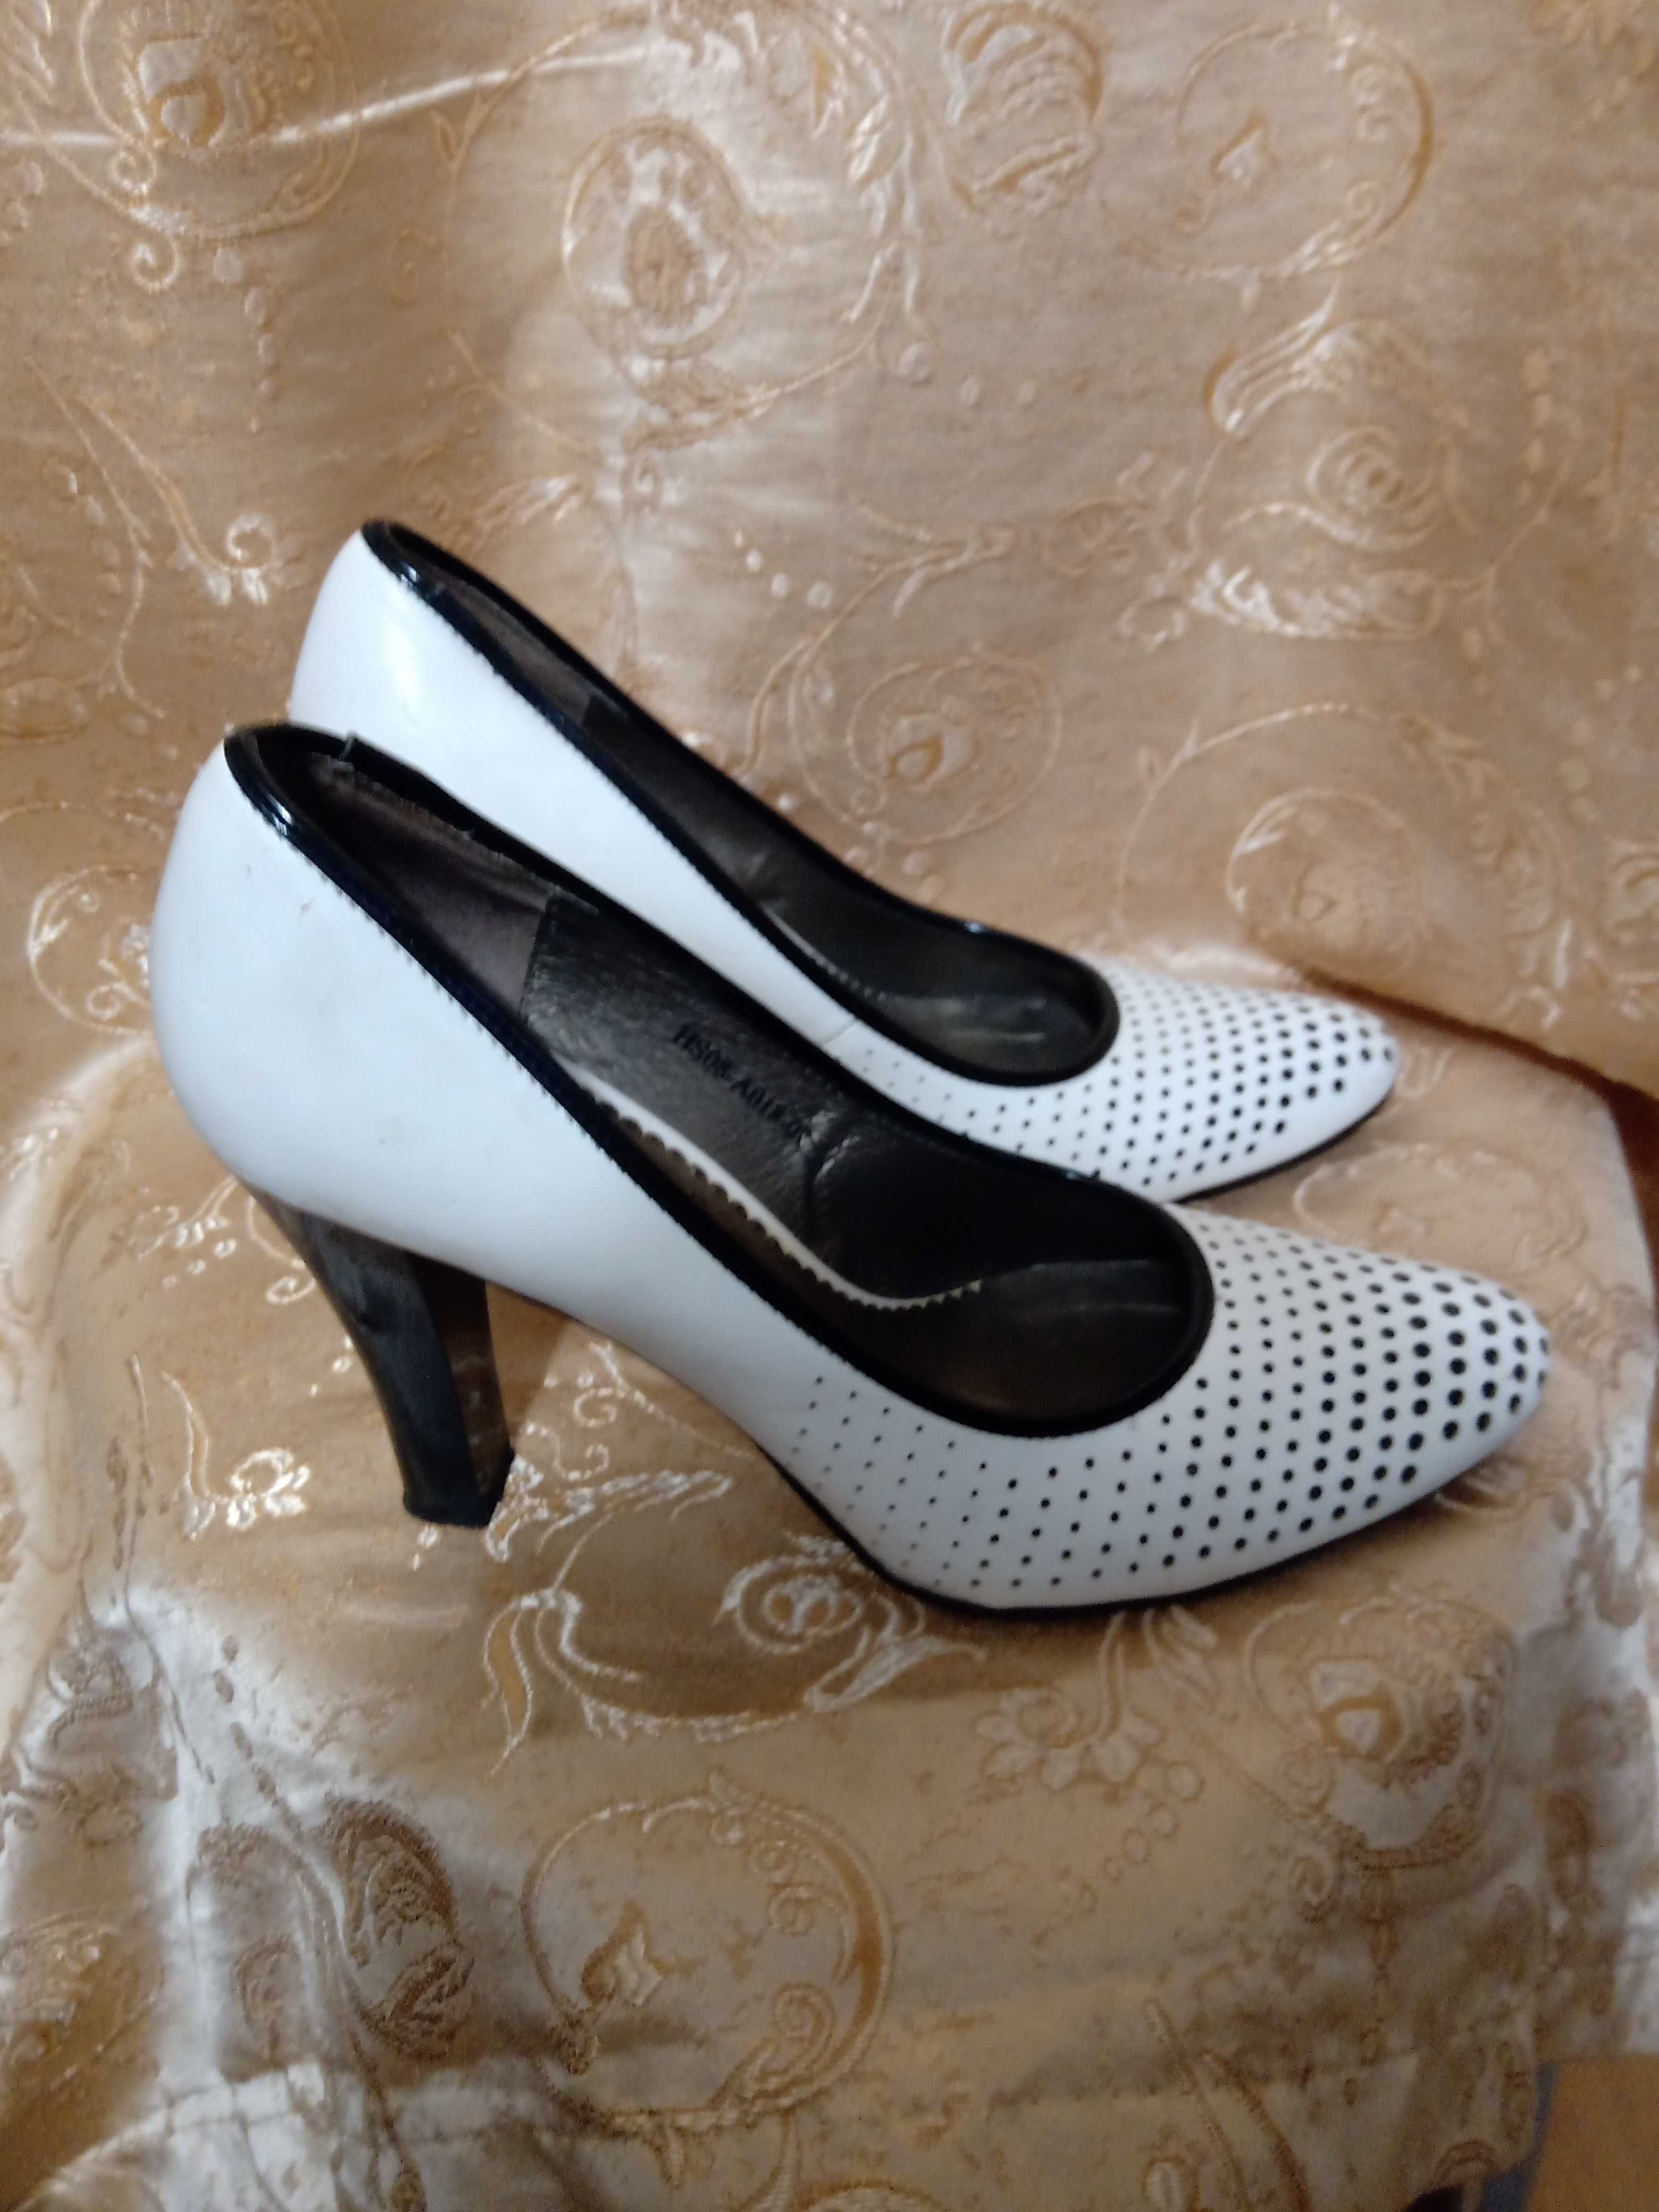 Продам туфли 37 размер, белого цвета с черной перфорацией